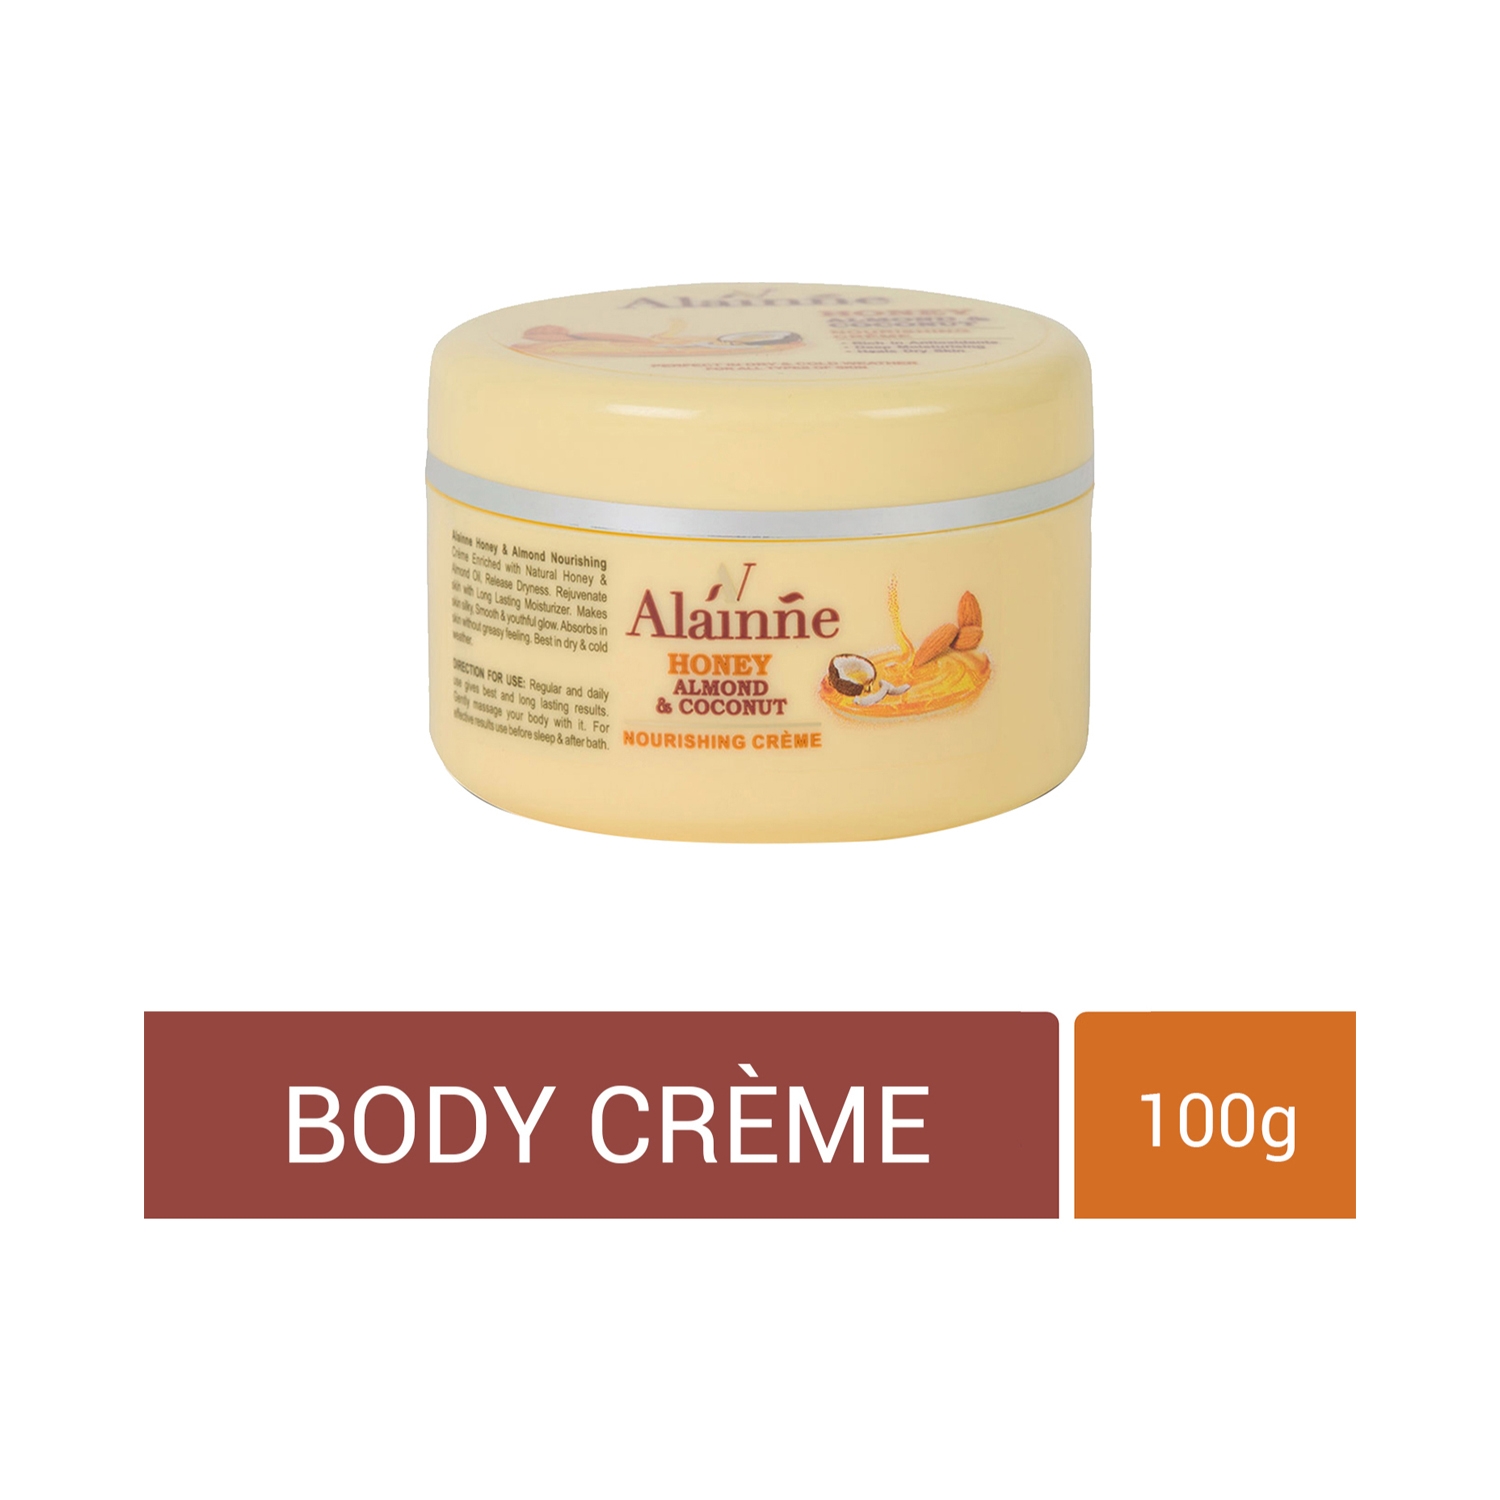 Alainne | Alainne Honey Almond & Coconut Nourishing Body Creme - (100g)